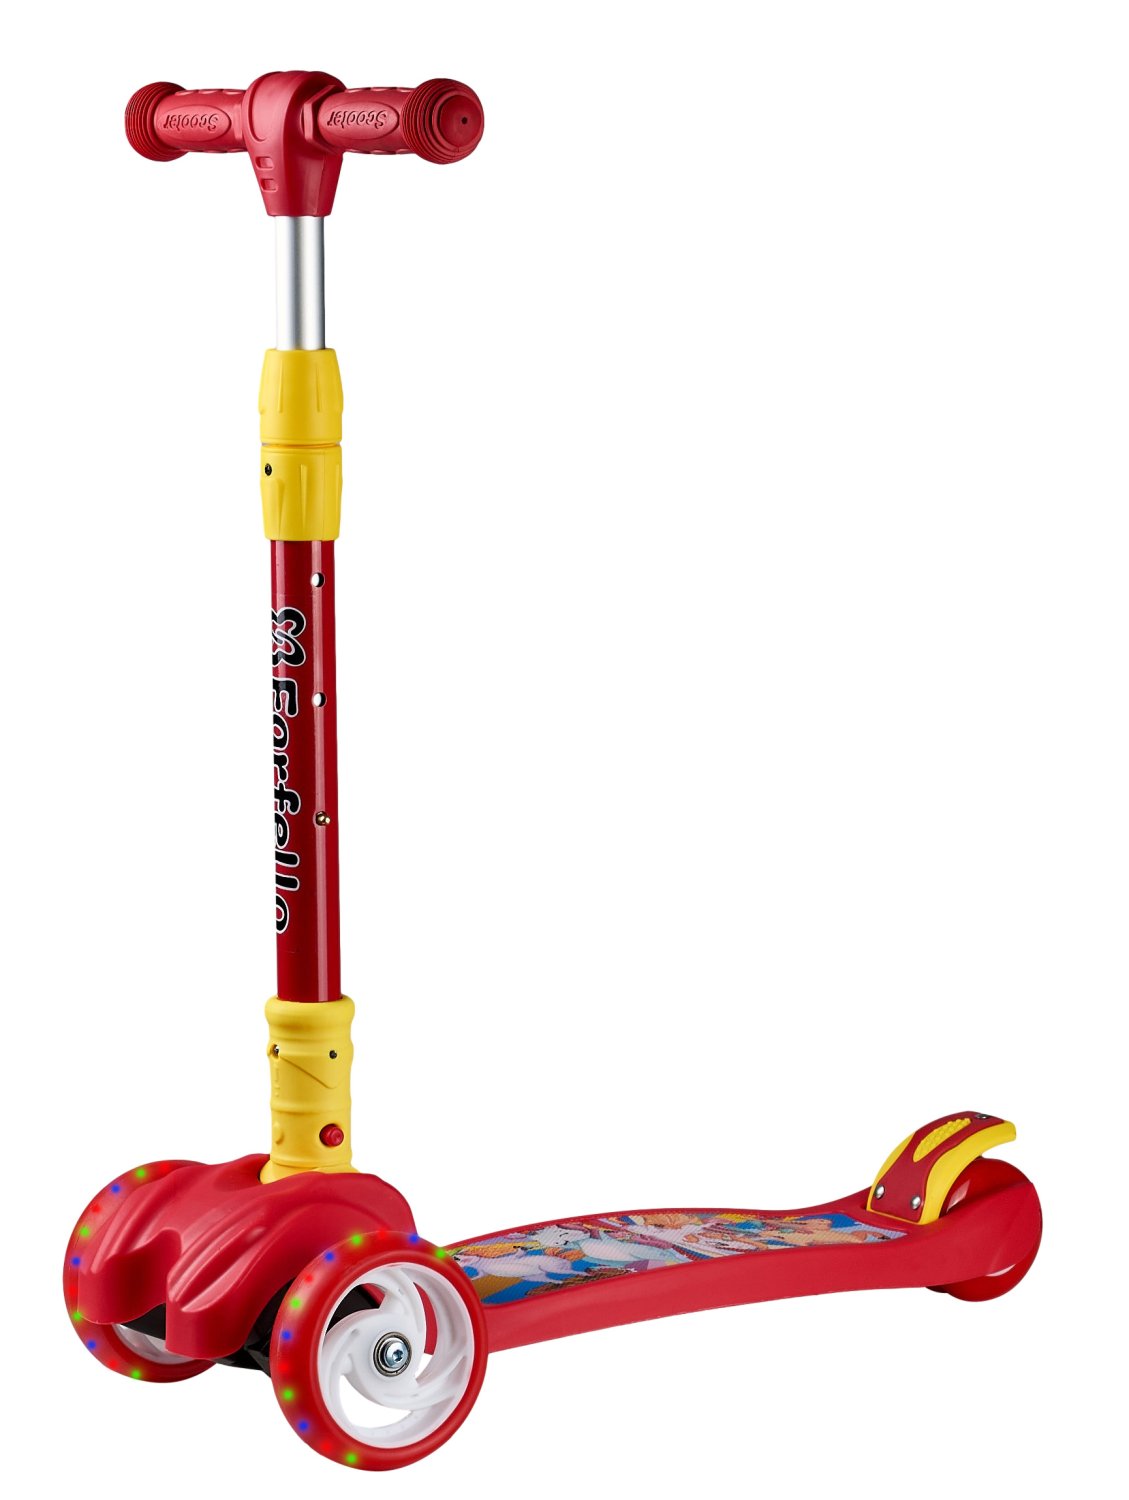 Самокат Farfello Maxi-897, детский, трёхколёсный, нагрузка до 50 кг, светящиеся колёса, red/красный